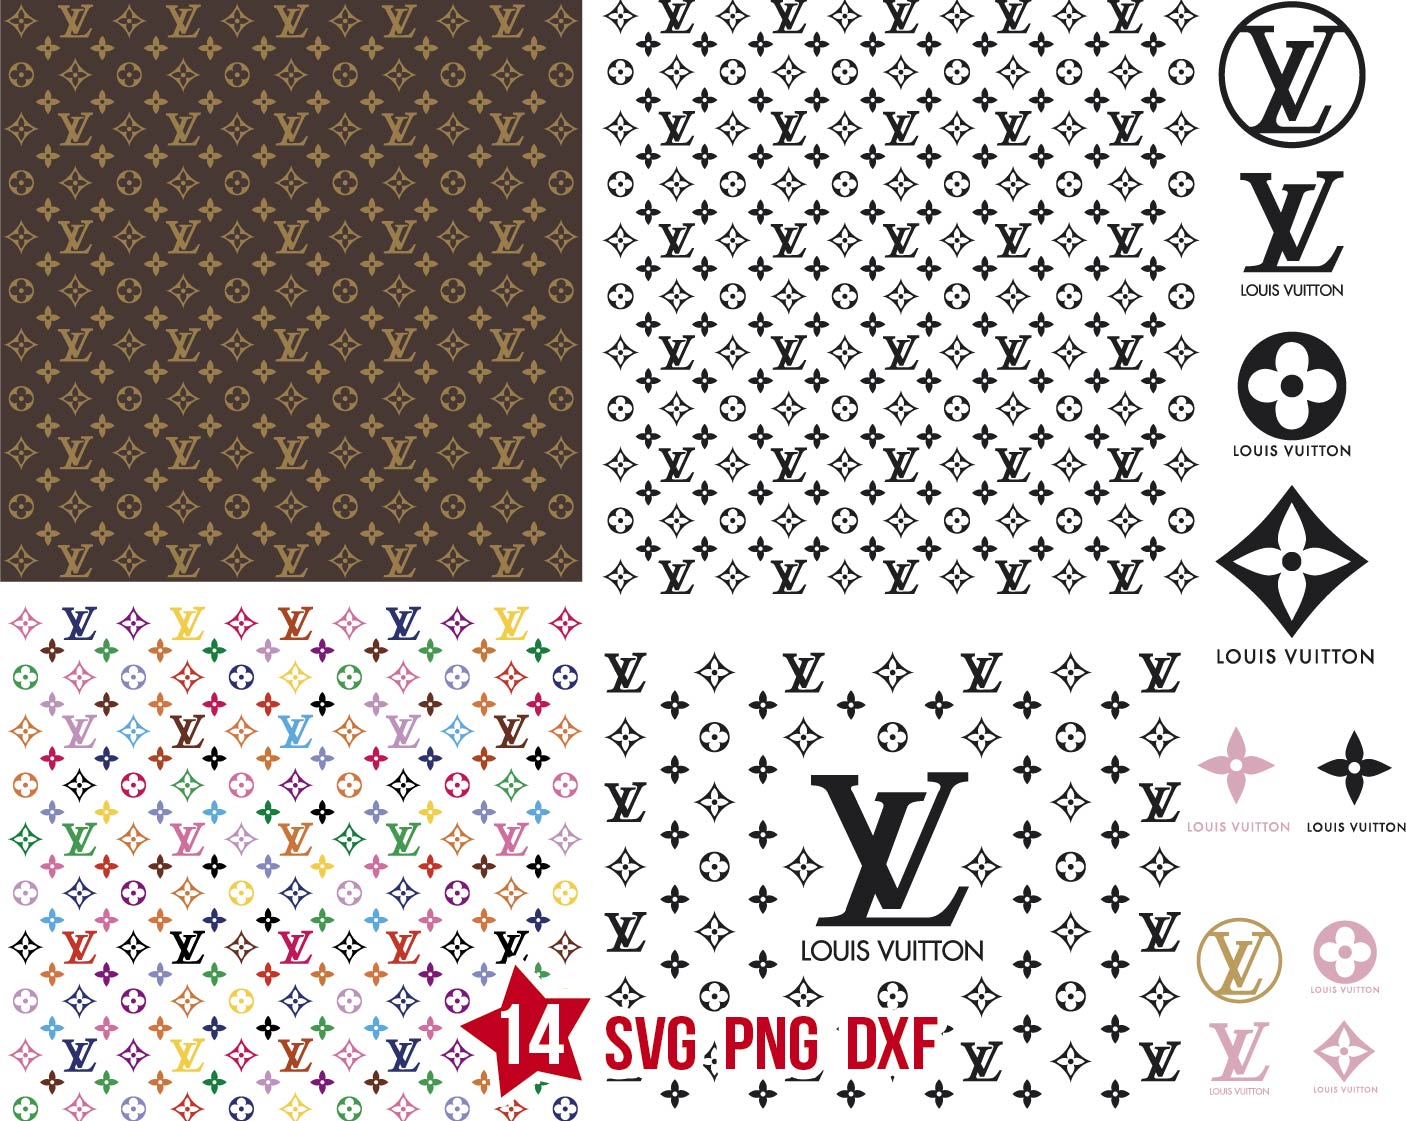 Louis Vuitton pattern svg, Louis Vuitton svg, Louis Vuitton png, Louis ...